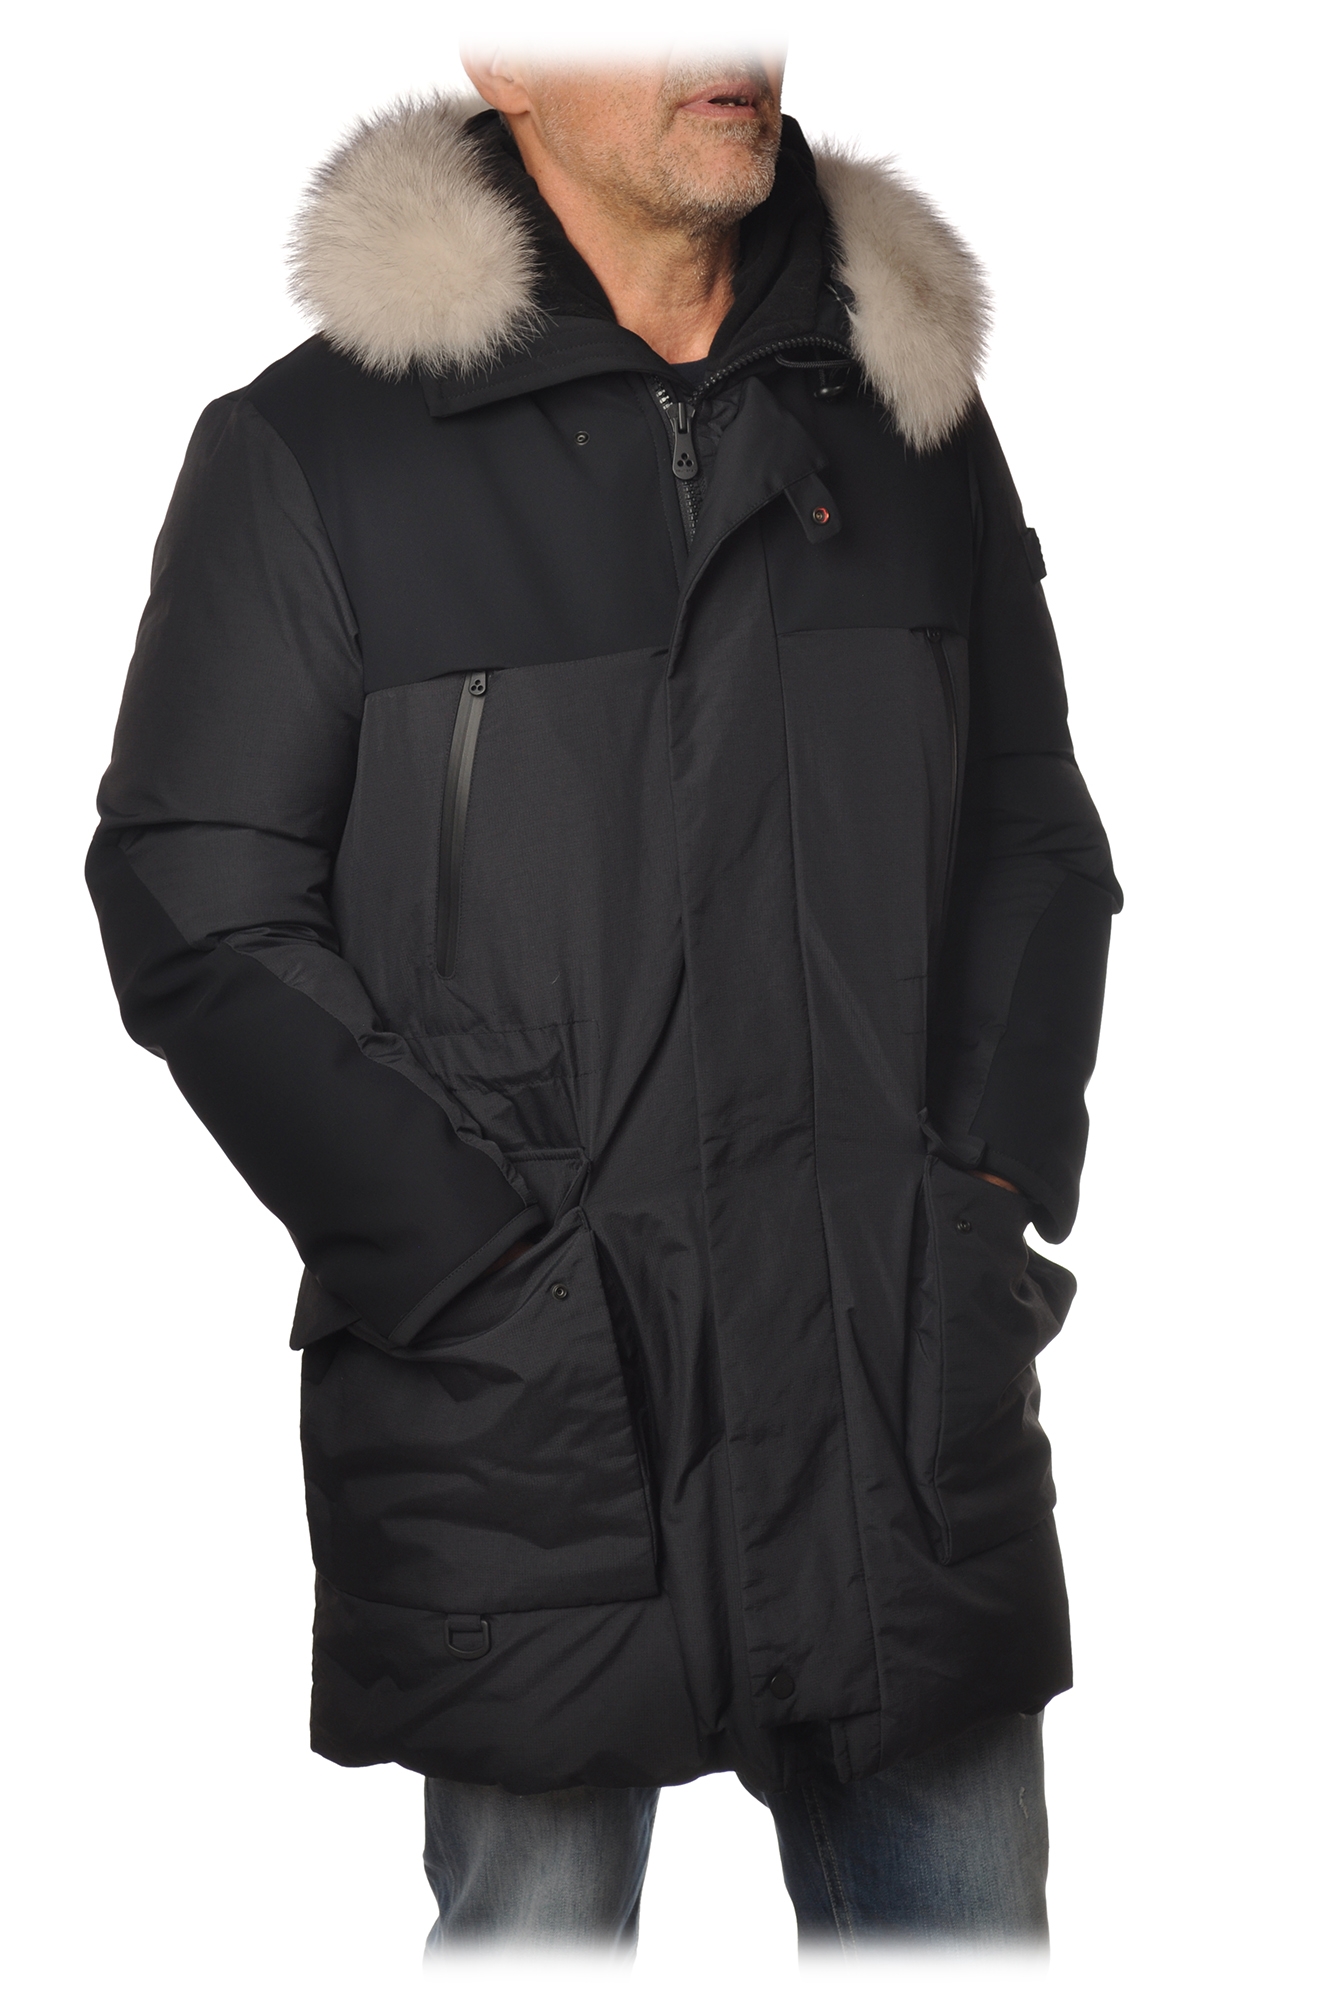 Uitbreiding verachten plaats Peuterey - Parka Jacket with Hood Erse Model - Black - Jacket - Luxury  Exclusive Collection - Avvenice